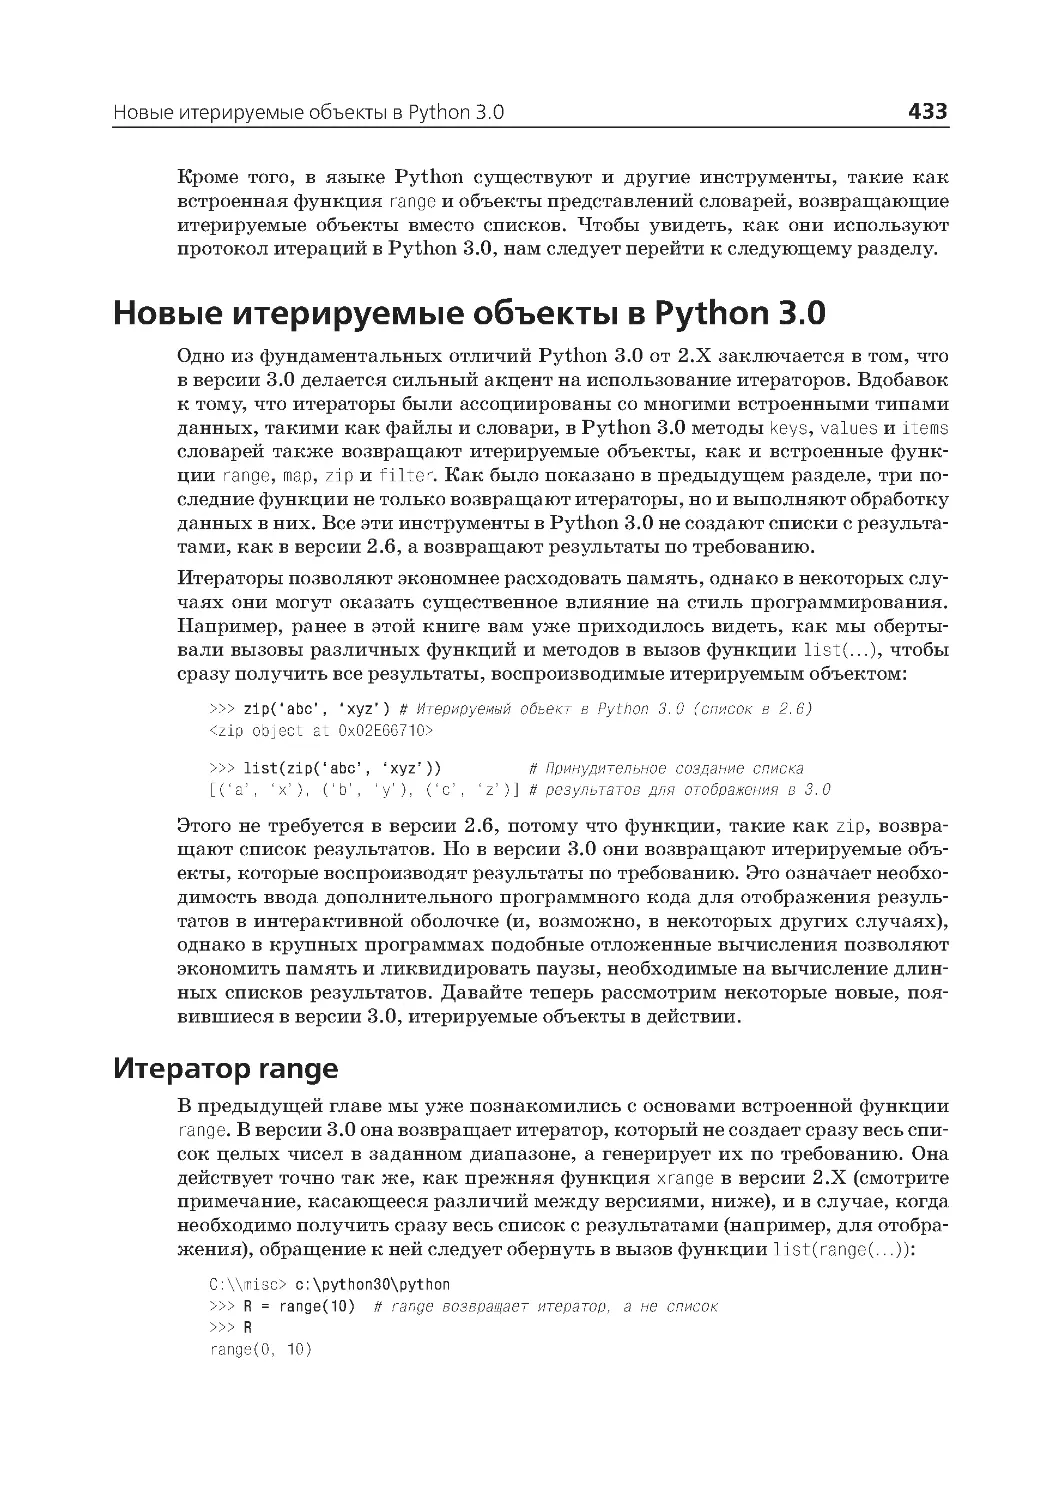 Новые итерируемые объекты в Python 3.0